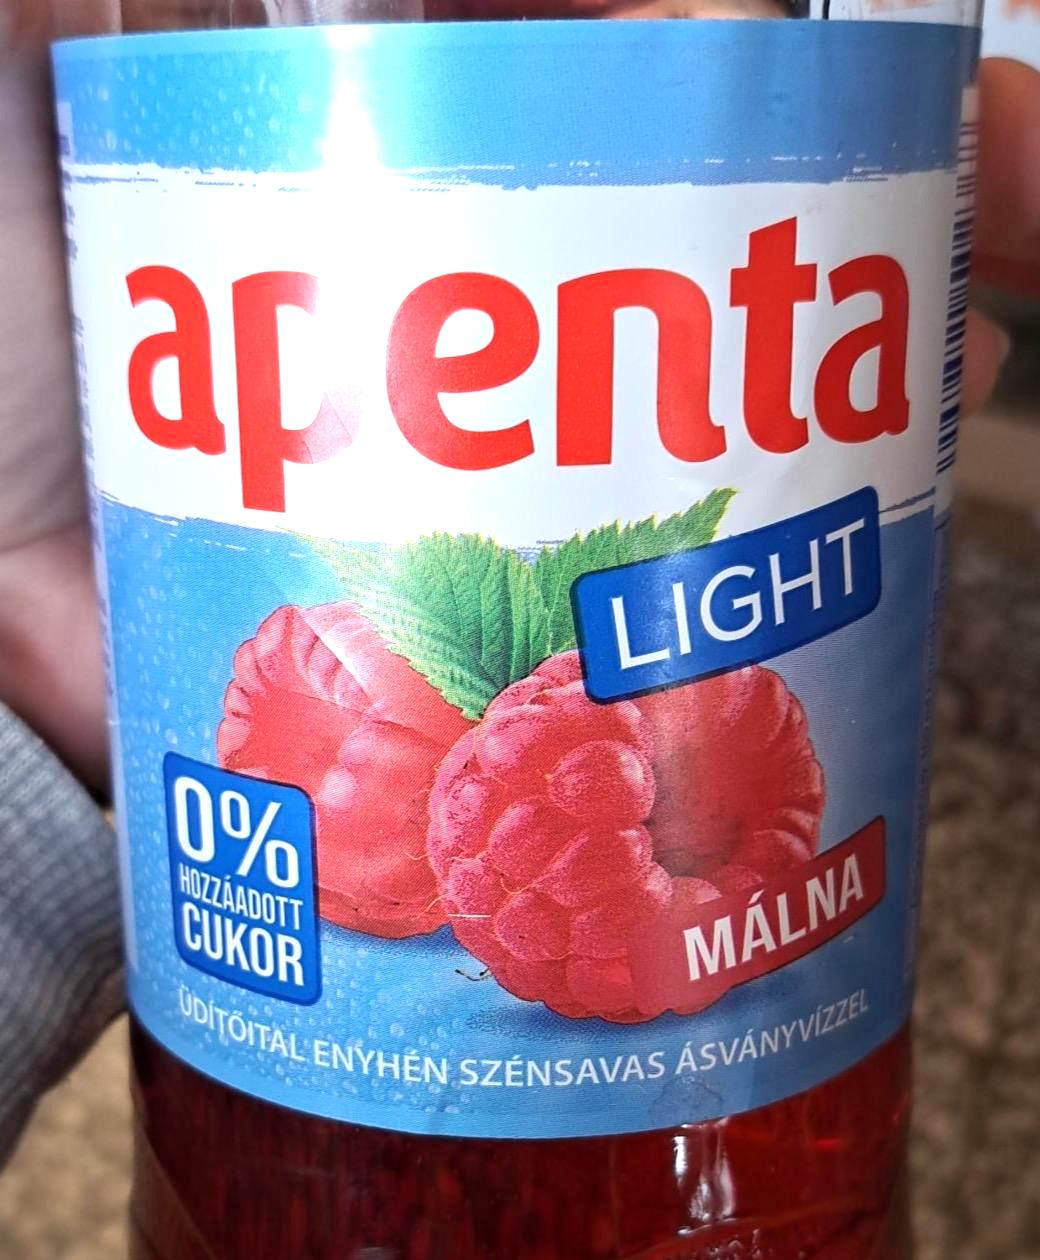 Képek - Apenta Light málna enyhén szénsavas üdítőital édesítőszerekkel